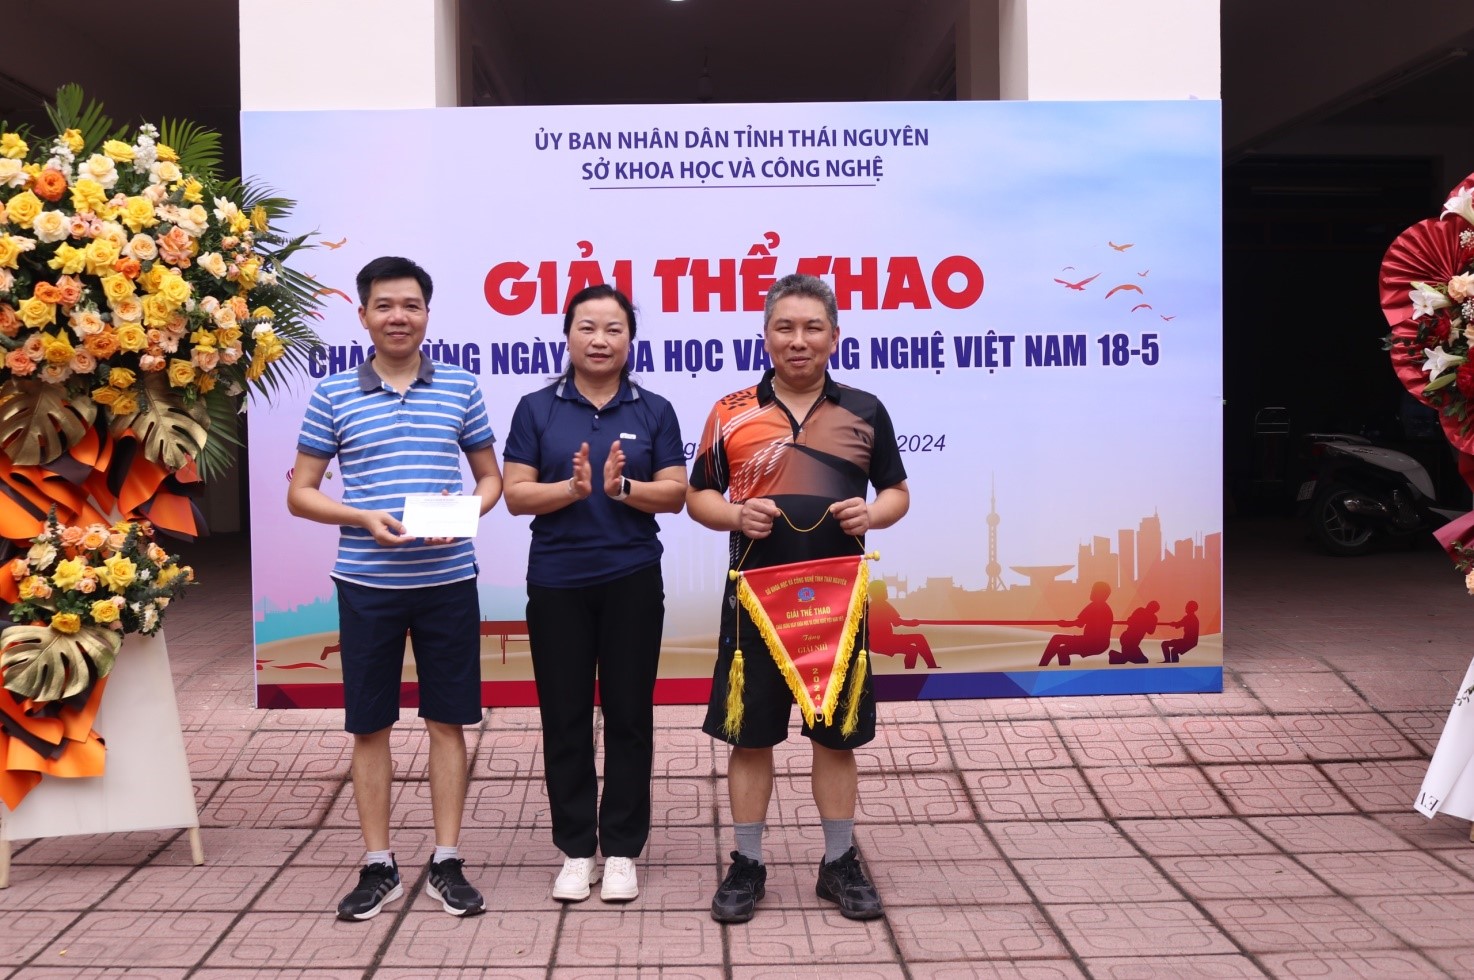 Giải thể thao chào mừng Ngày Khoa học và Công nghệ Việt Nam 18-5 -3